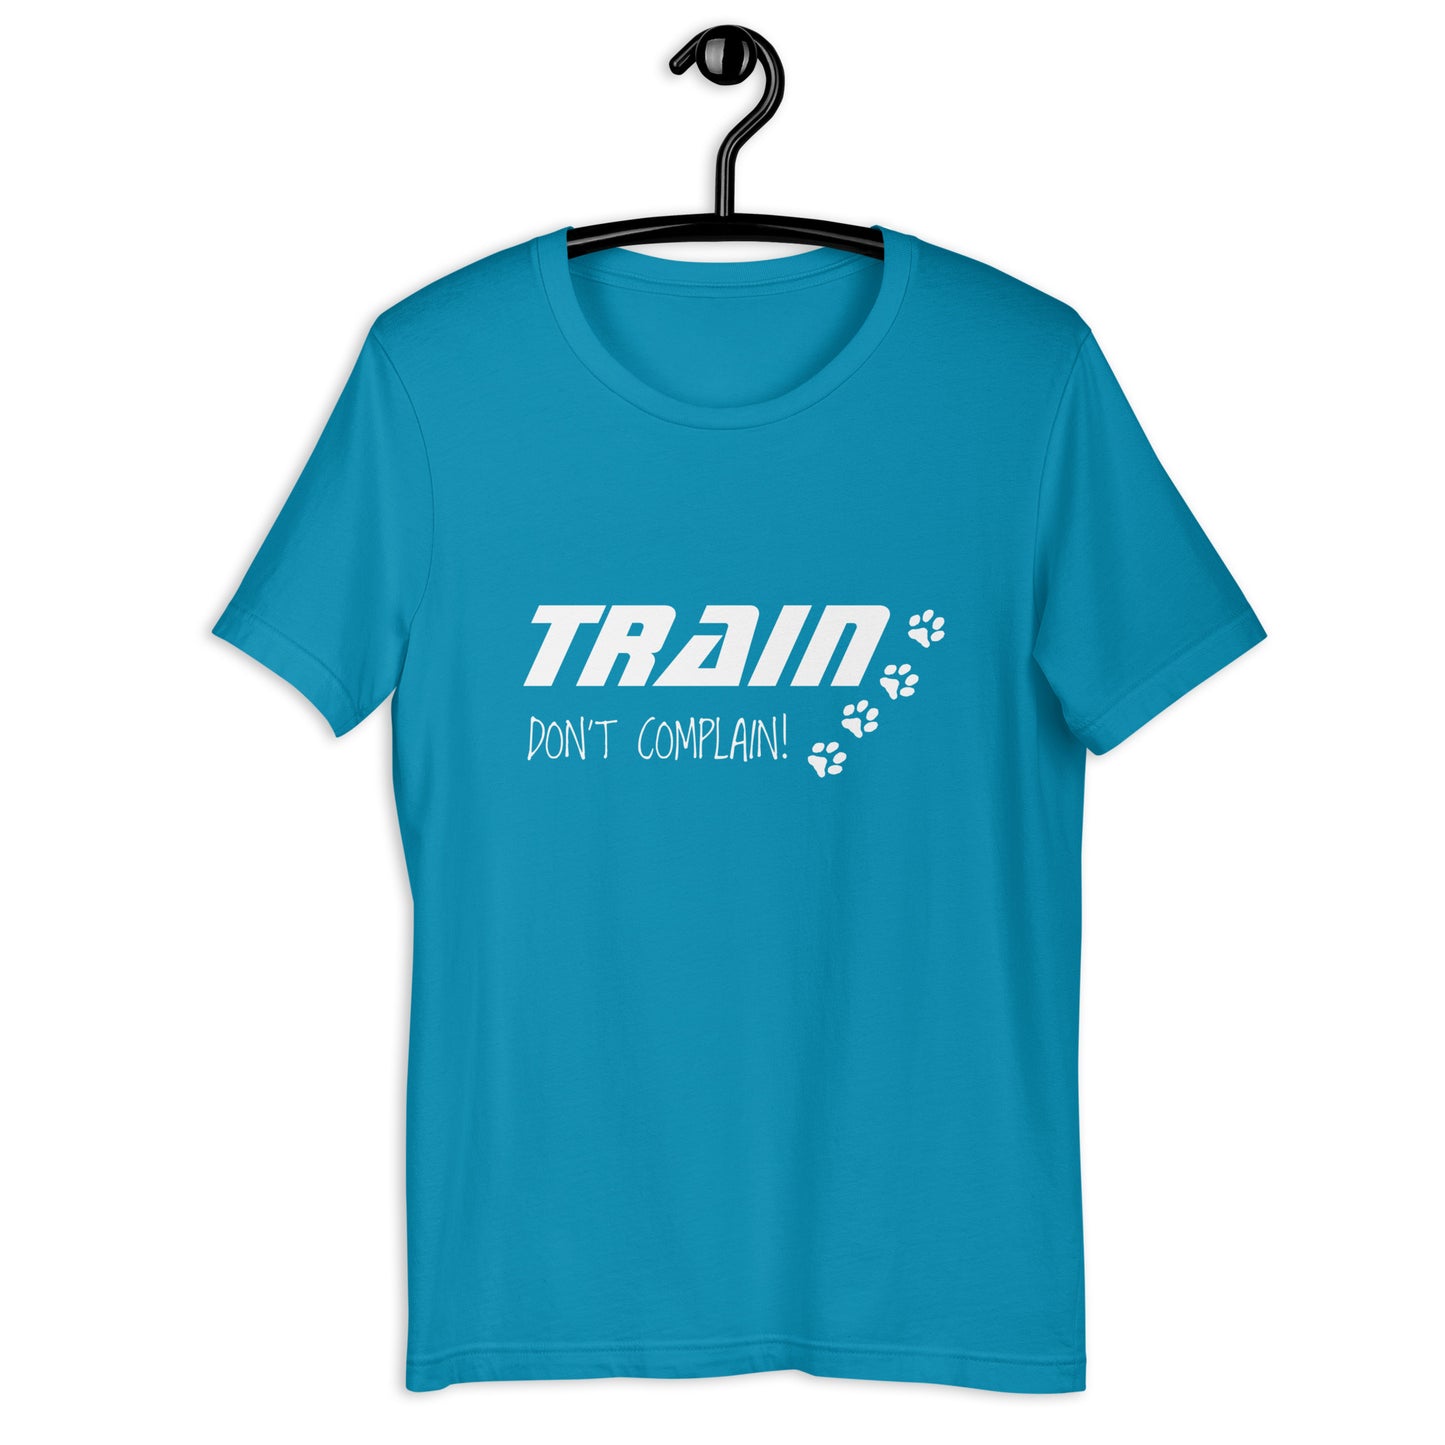 TRAIN DONT COMPLAIN - Unisex t-shirt